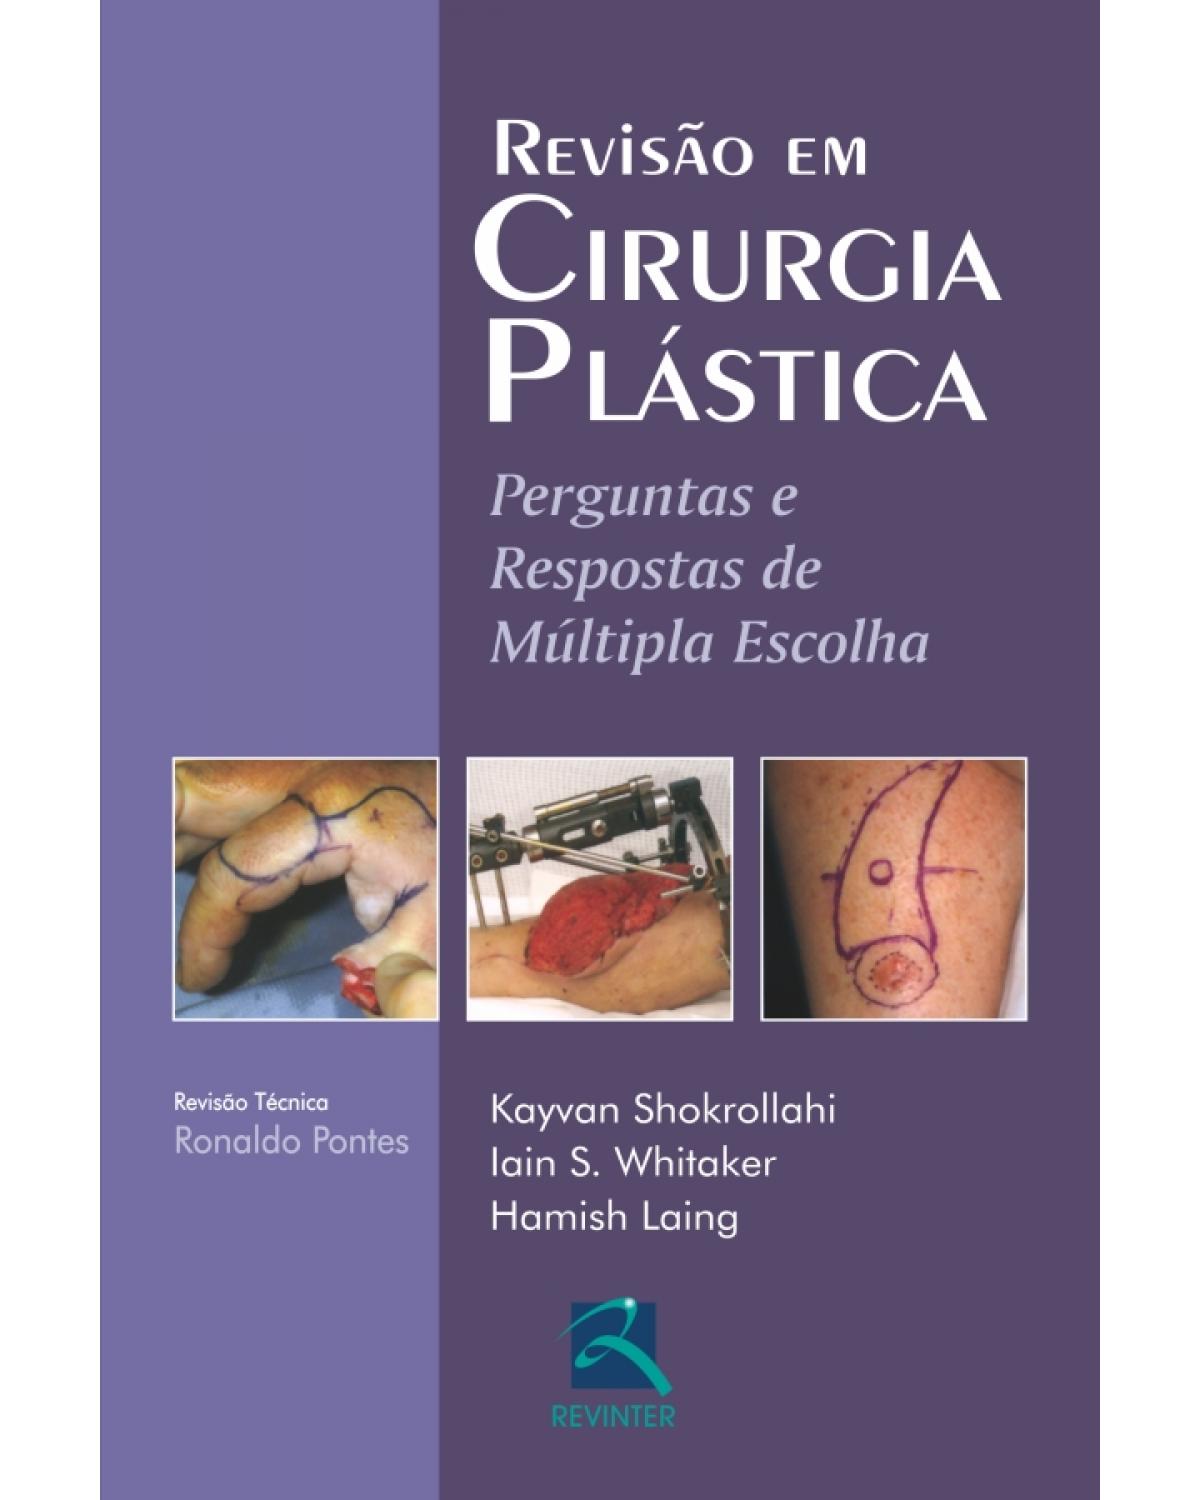 Revisão em cirurgia plástica - perguntas e respostas de múltipla escolha - 1ª Edição | 2011